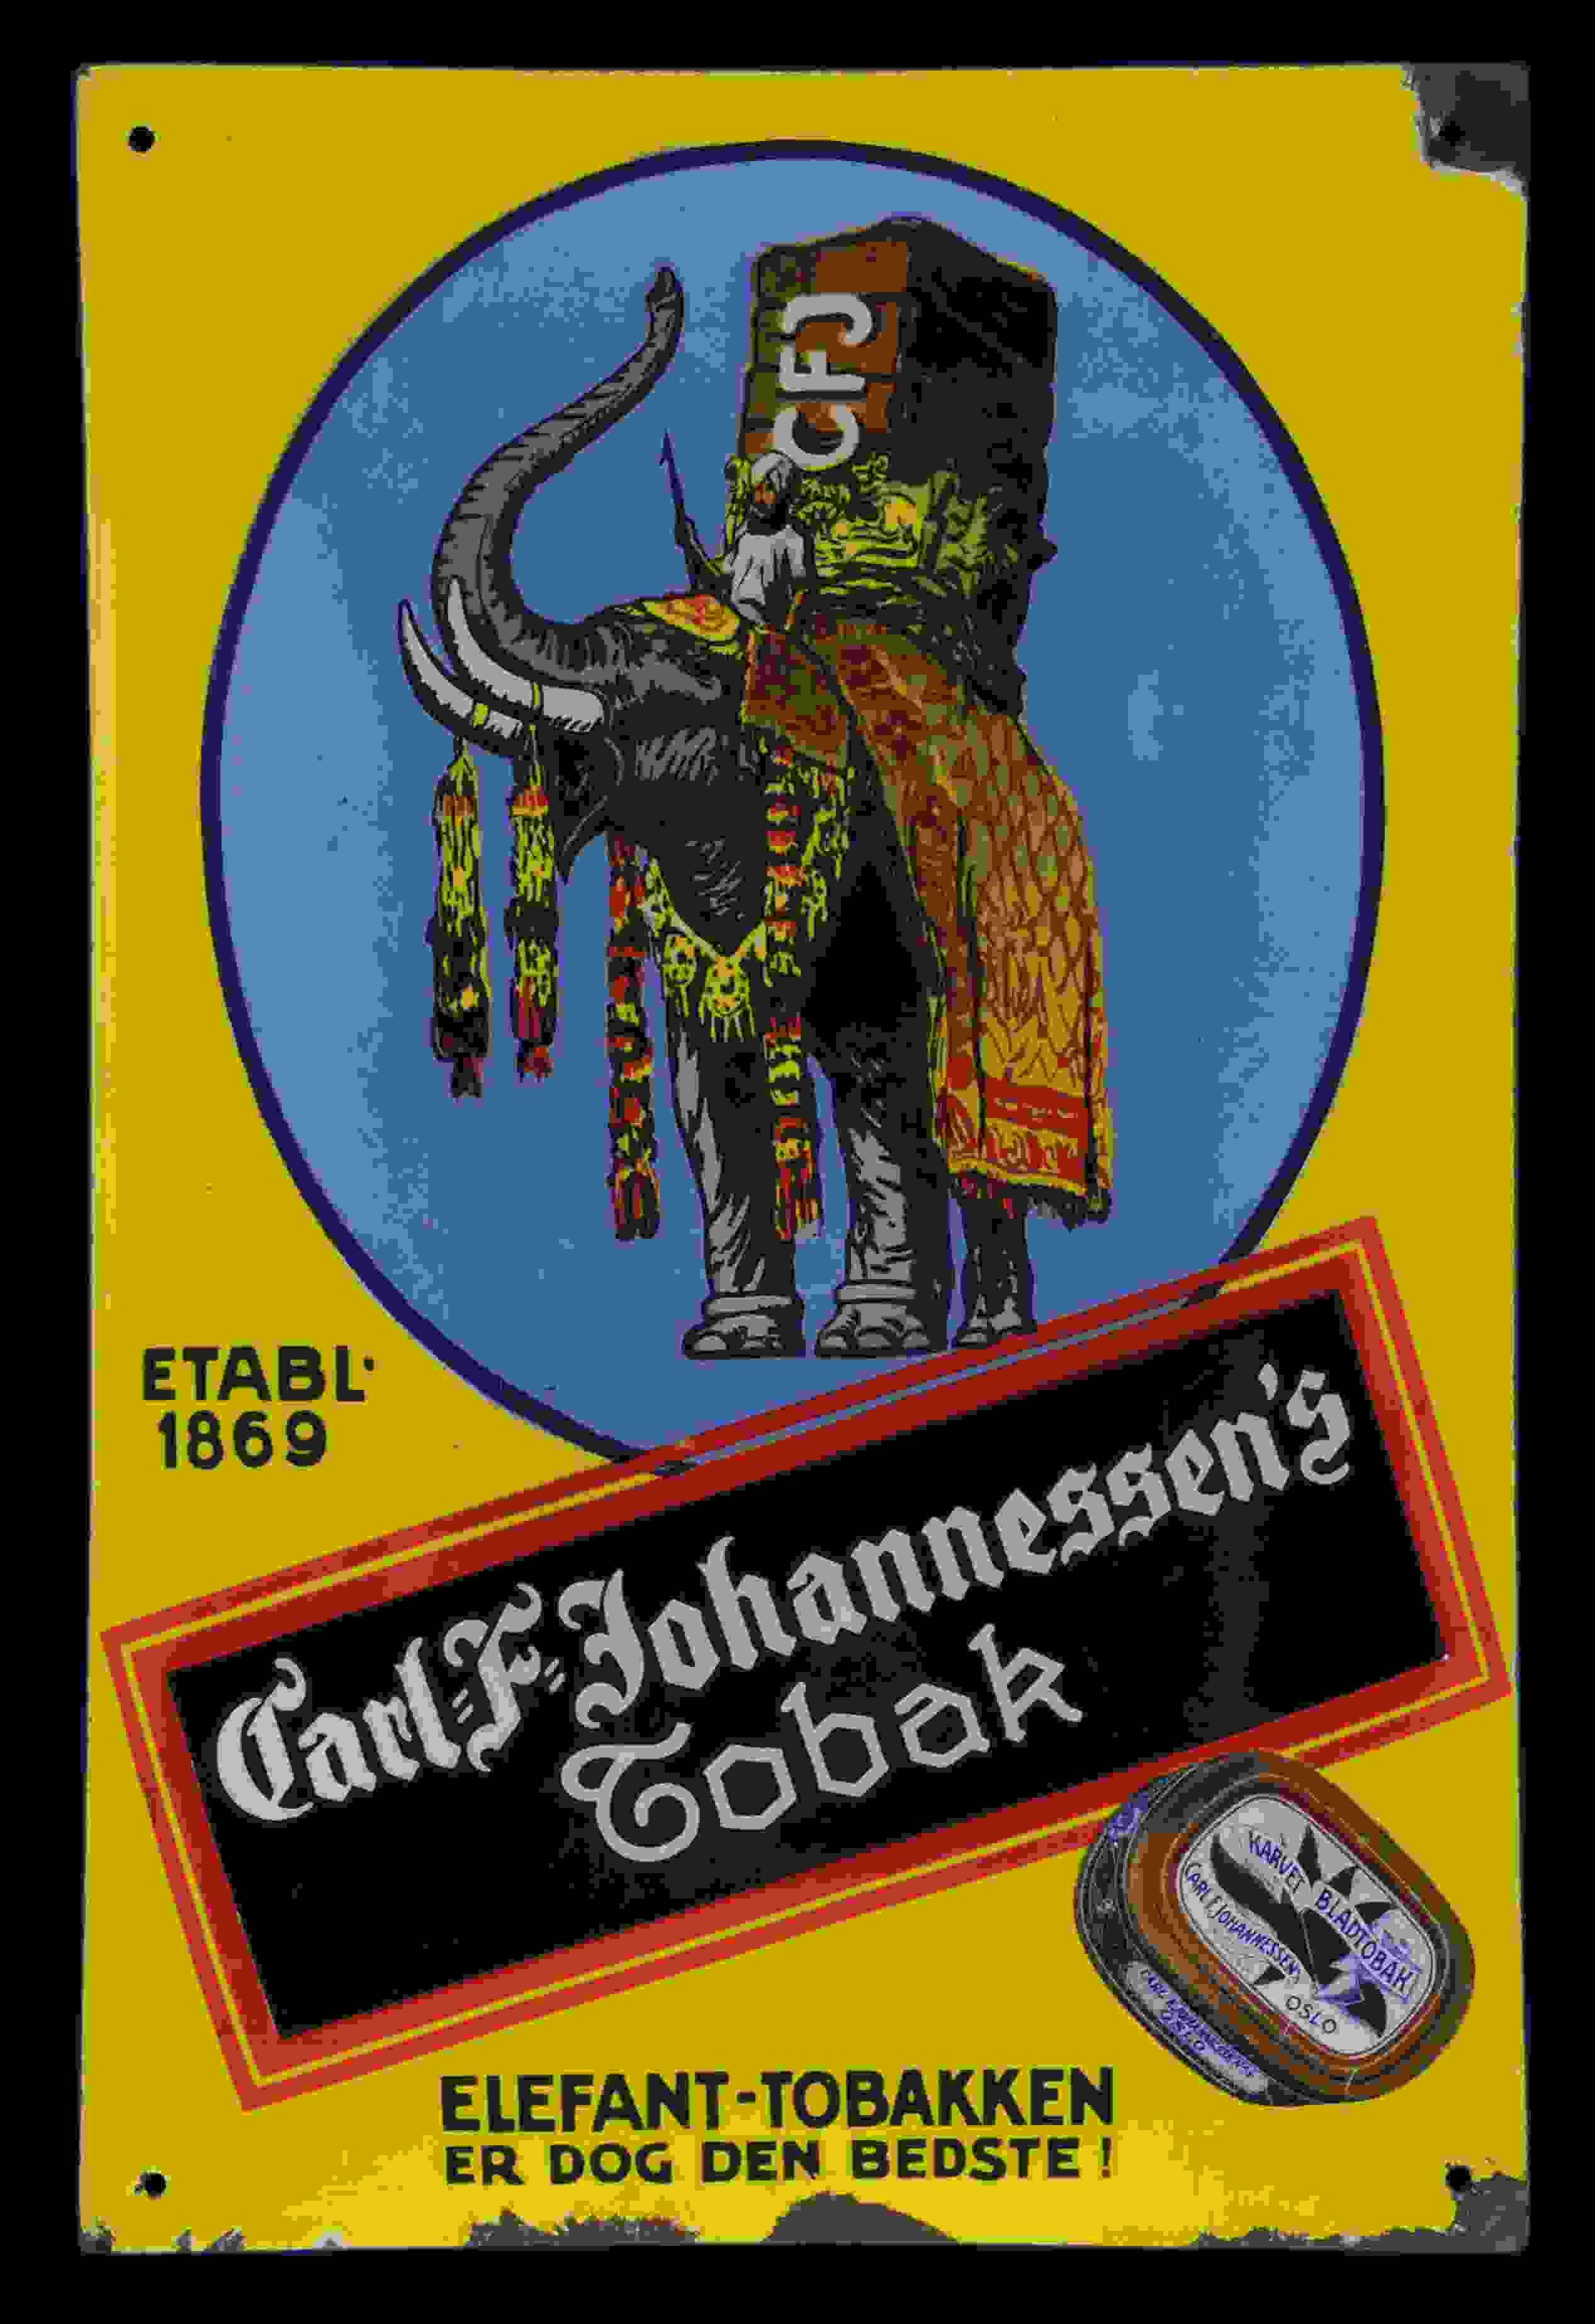 Carl-F-Johannessen's Elefant-Tobakken 